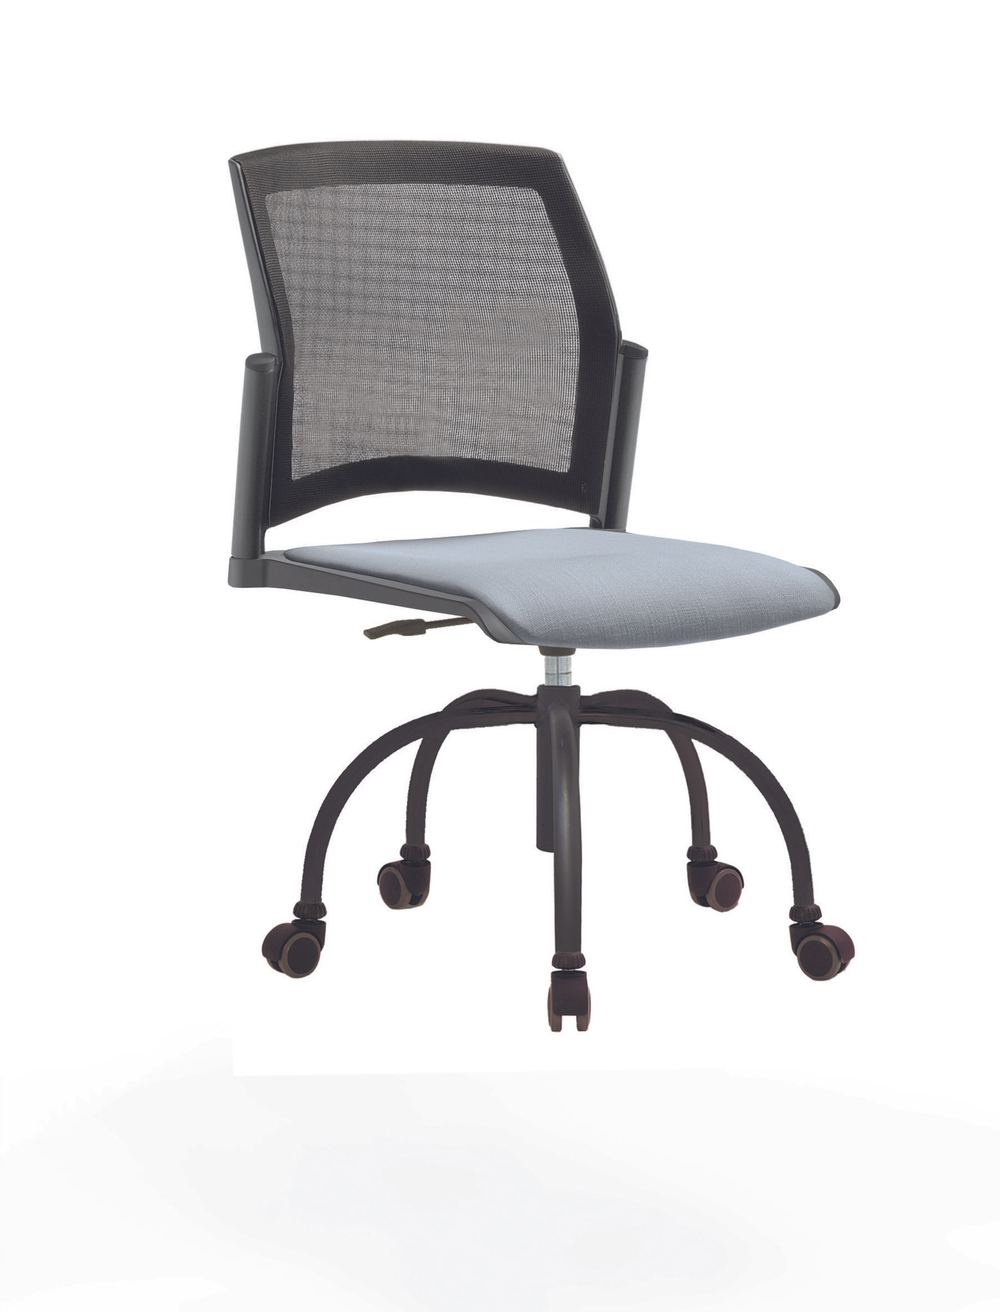 Кресло Rewind каркас черный, пластик серый, база паук краска черная, без подлокотников, сиденье серо-голубое, спинка-сетка